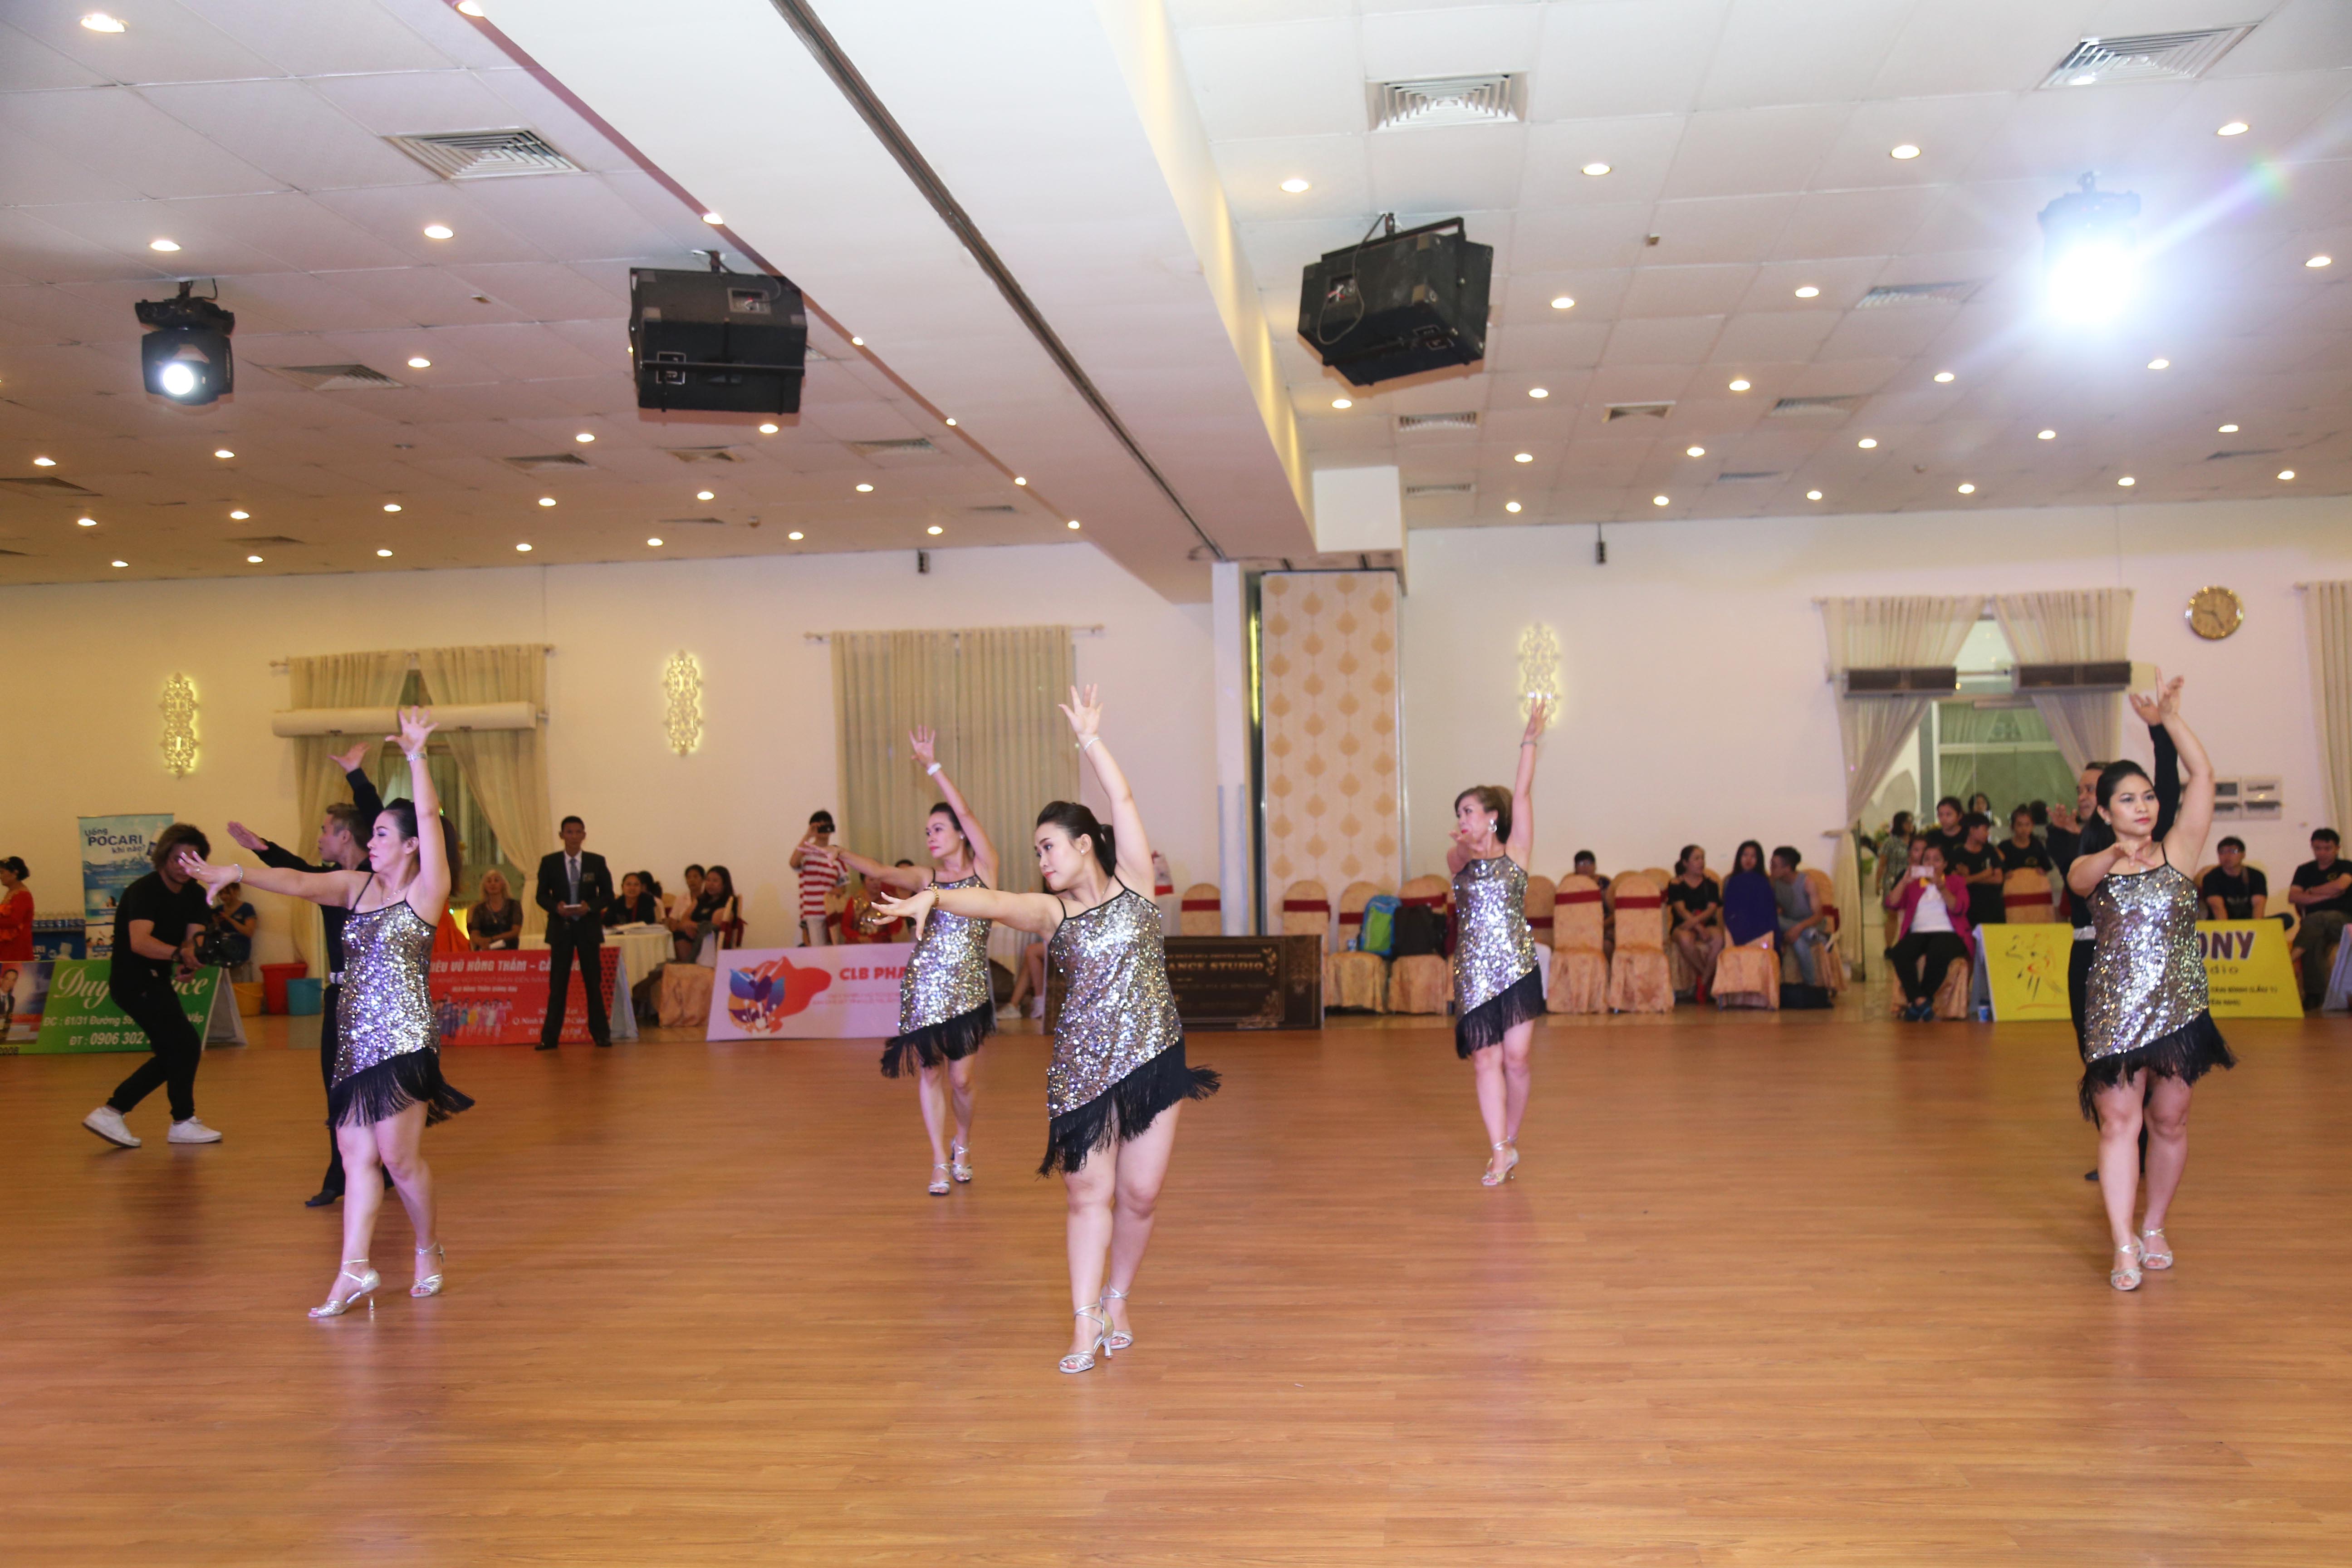 Hình ảnh: Gần 300 VĐV tham dự Giải khiêu vũ thể thao Cúp Grace Dance Mở Rộng số 3